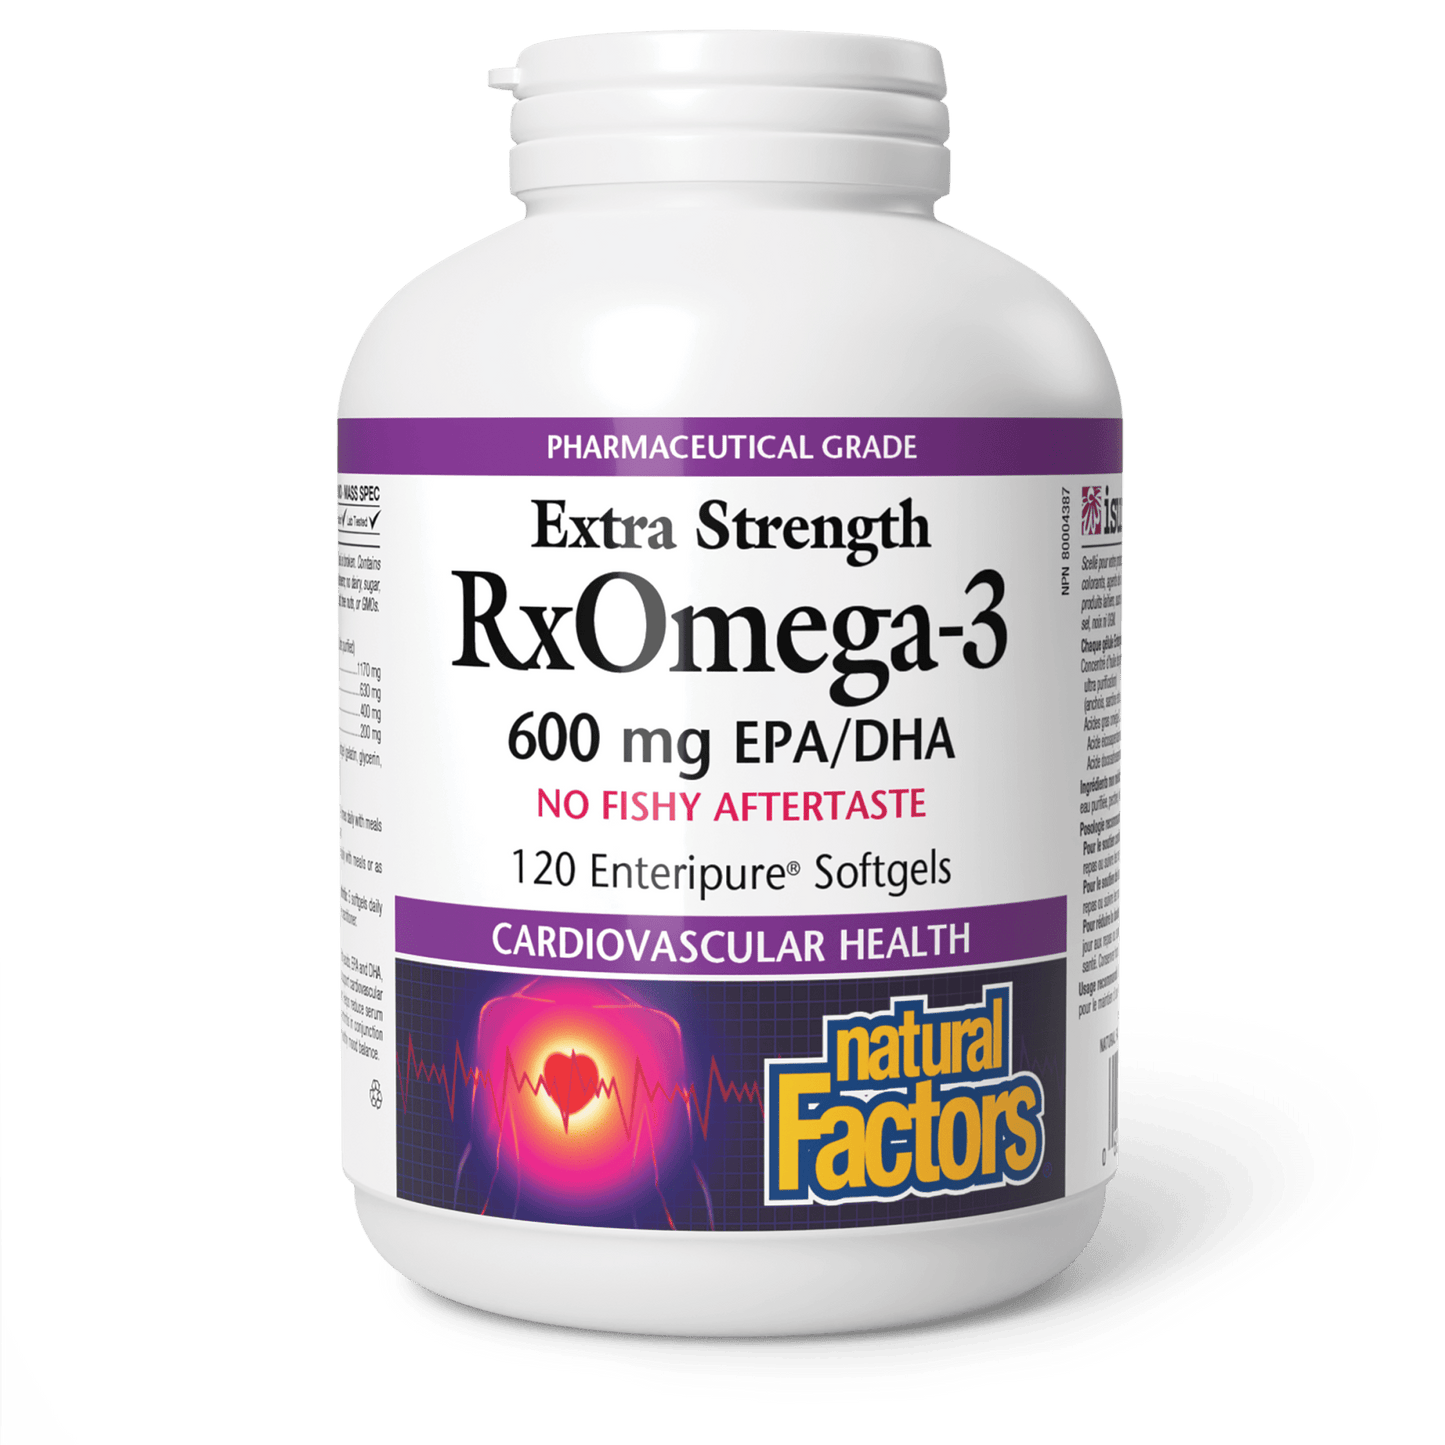 RxOmega-3 Extra Strength 600 mg, Natural Factors|v|image|3549